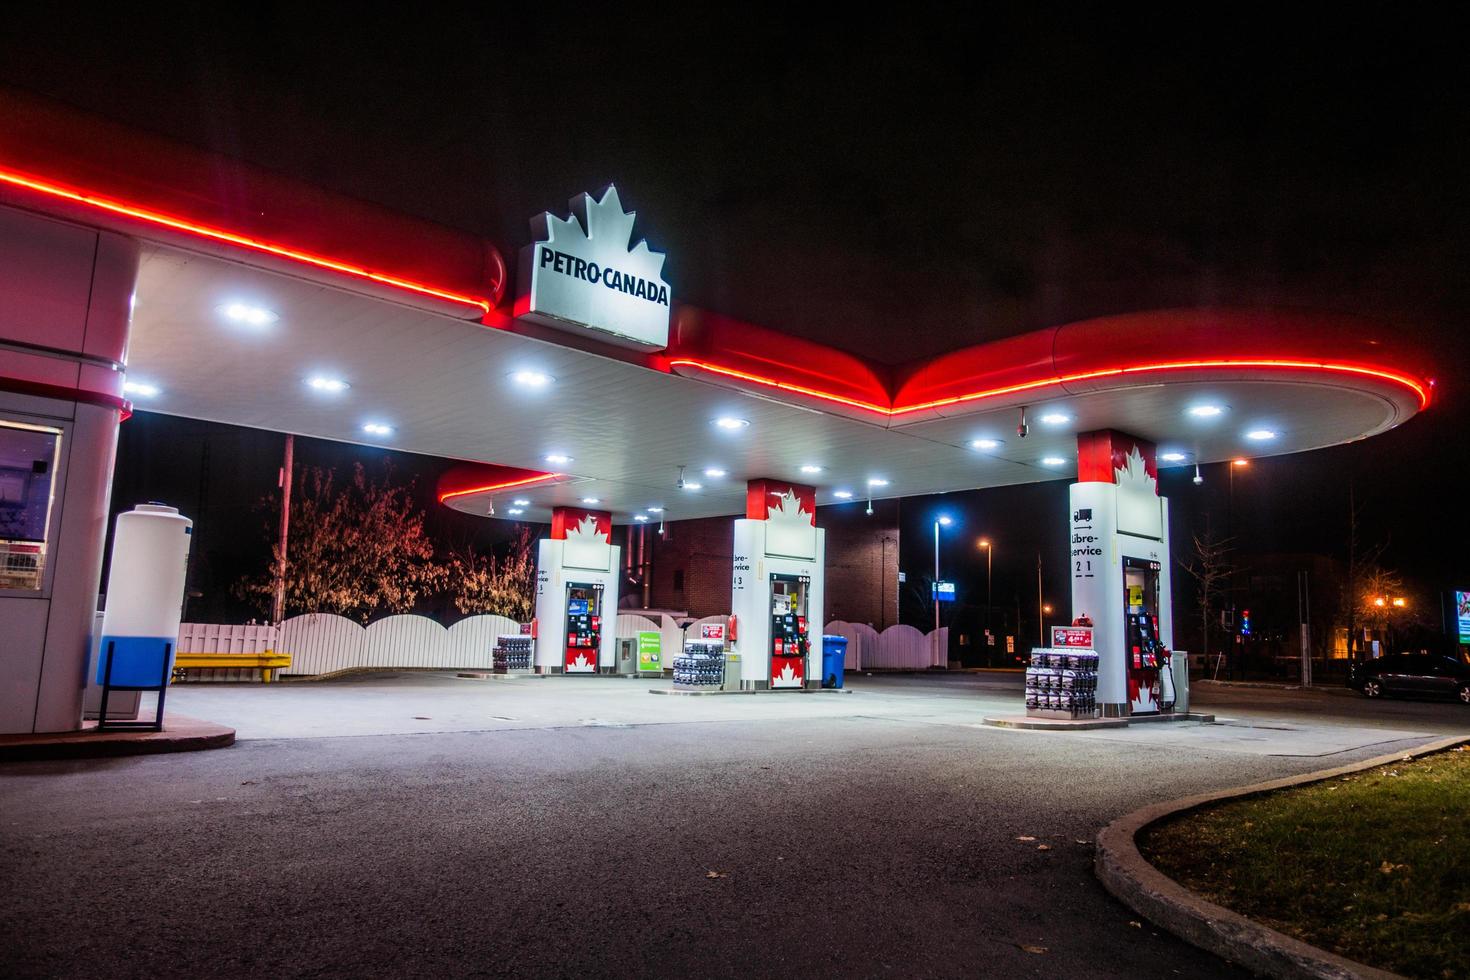 montreal, kanada 1 december 2017. petro canada handel och bensinstation upplyst sent på natten foto